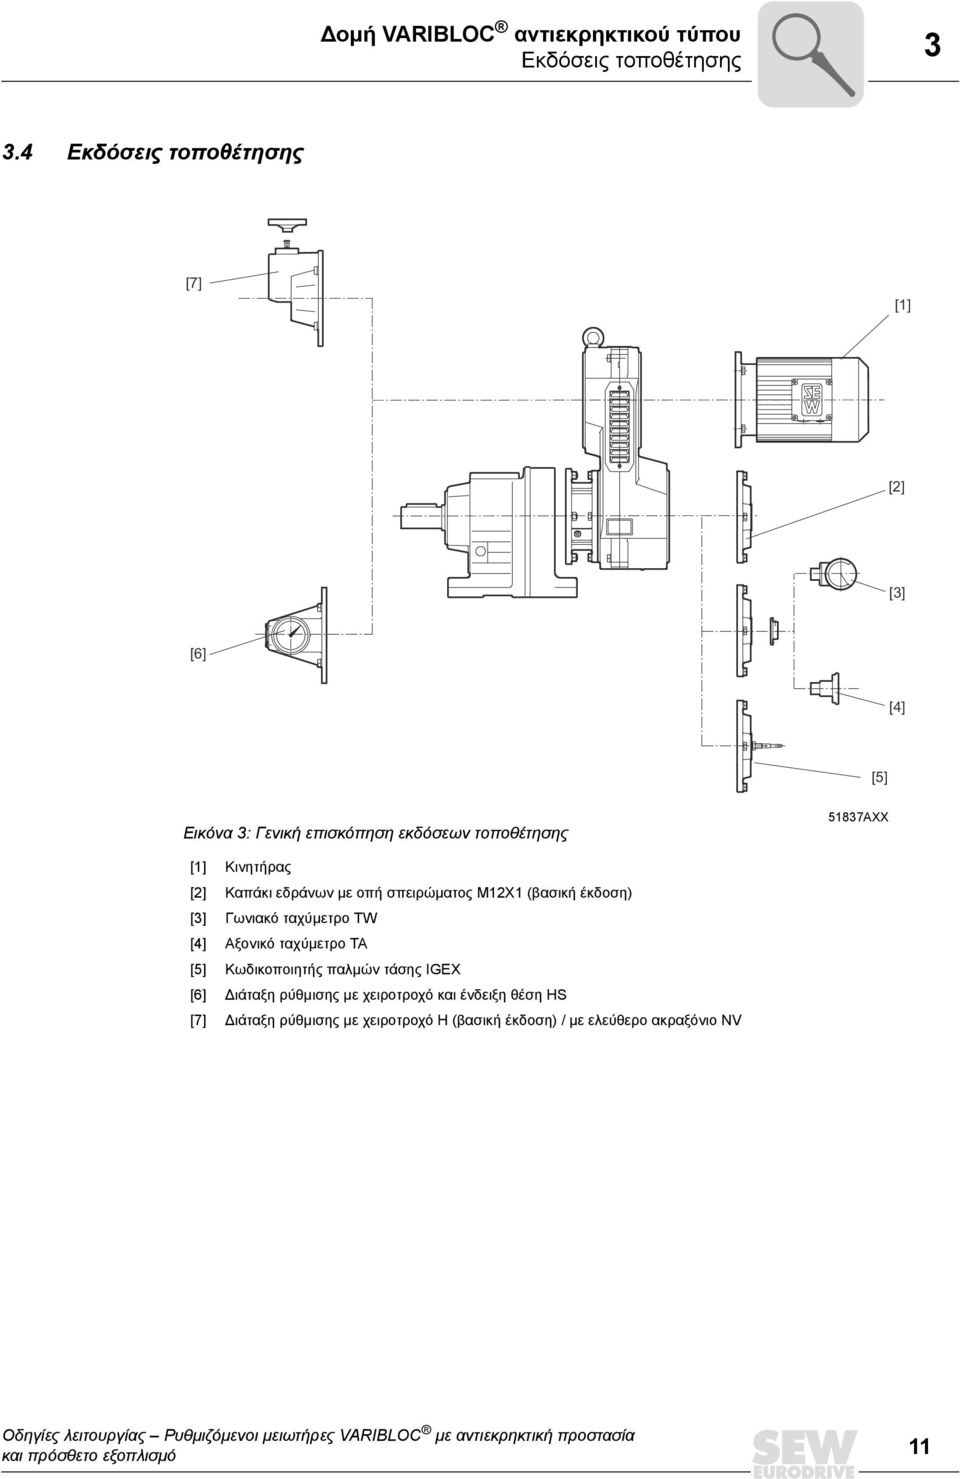 Κινητήρας [2] Καπάκι εδράνων µε οπή σπειρώµατος M12X1 (βασική έκδοση) [3] Γωνιακό ταχύµετρο TW [4] Αξονικό